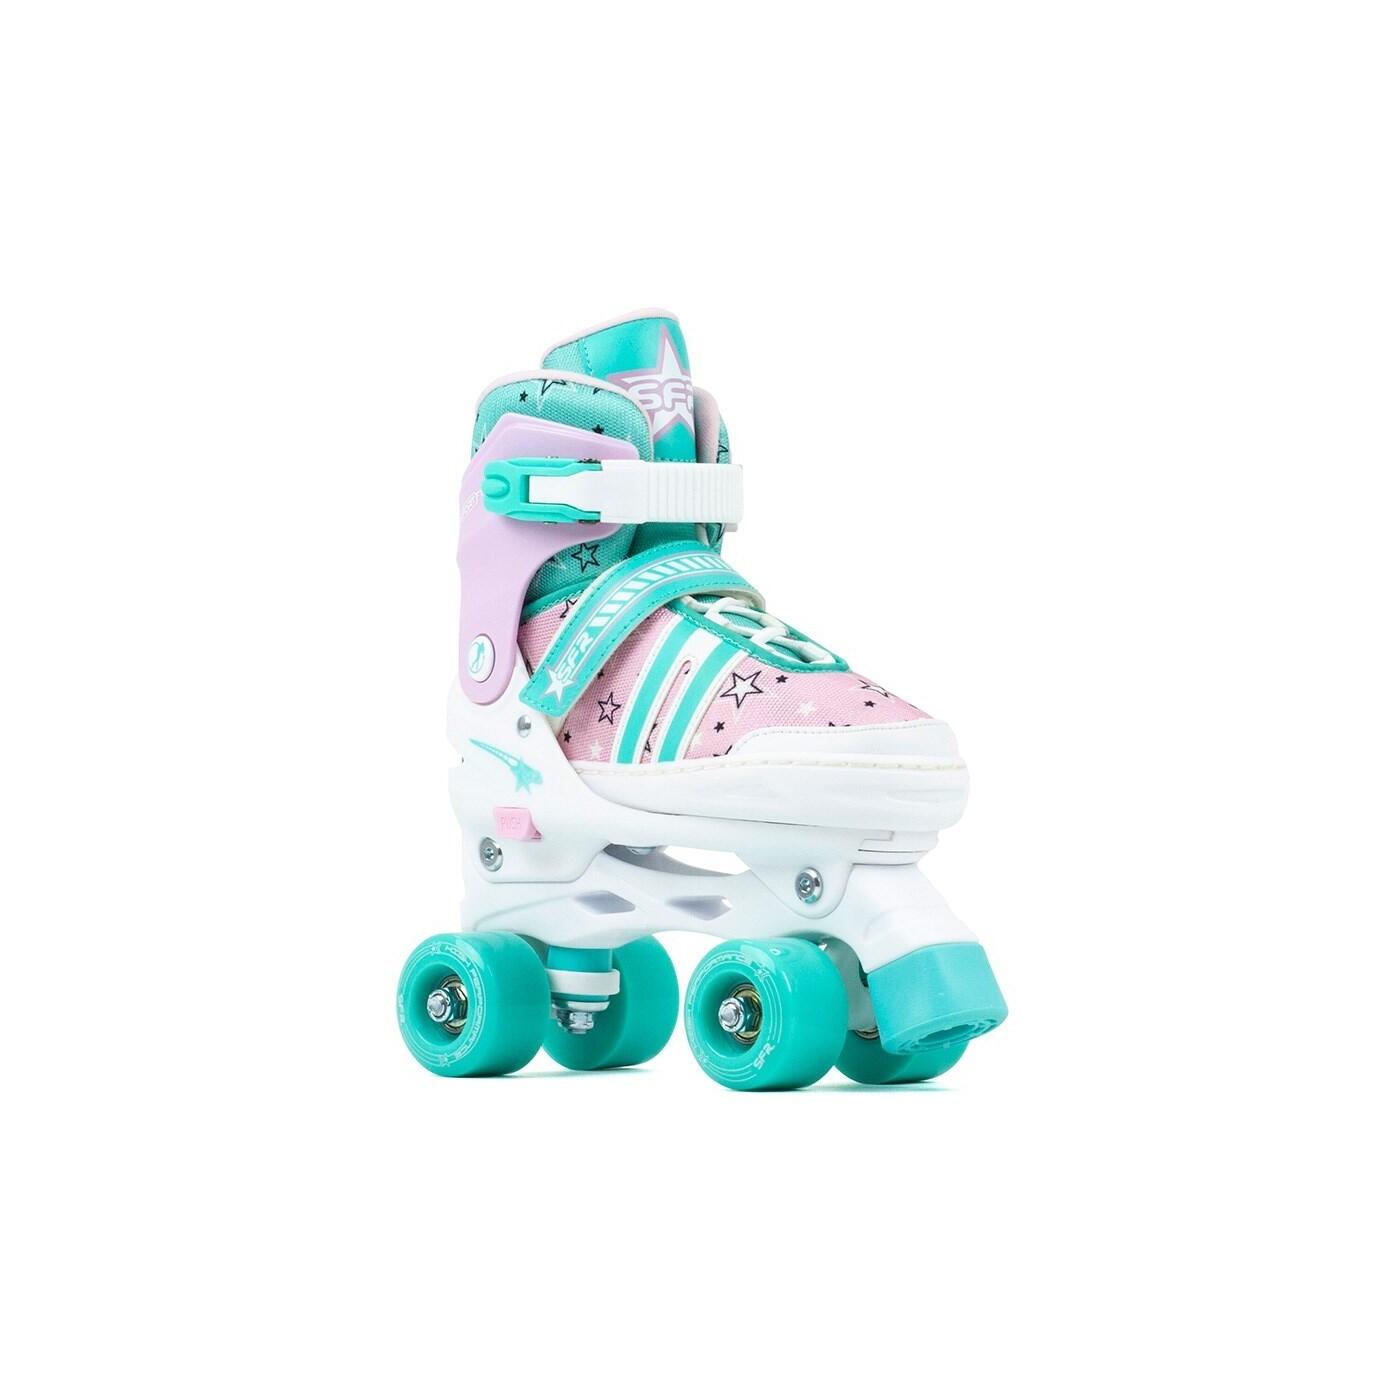 SFR Spectra Teal/Pink Adjustable Kids Quad Roller Skates